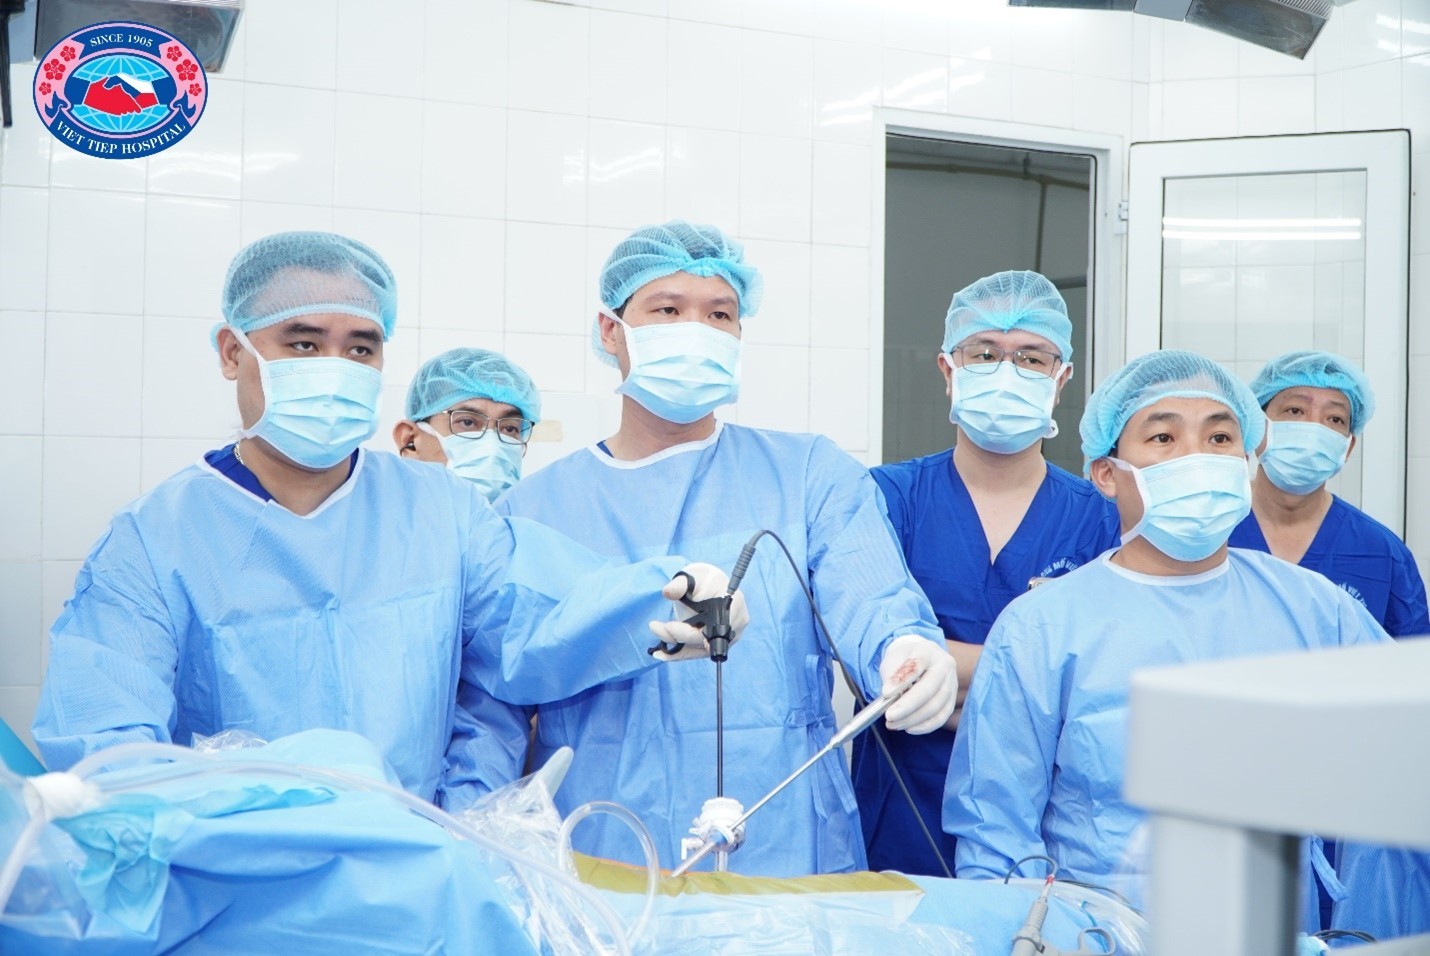 Các phẫu thuật viên Bệnh viện Hữu Nghị Việt Tiệp cùng chuyên gia Bệnh viện Hữu nghị Việt Đức thực hiện phẫu thuật nội soi lấy thận từ người cha T.X.D